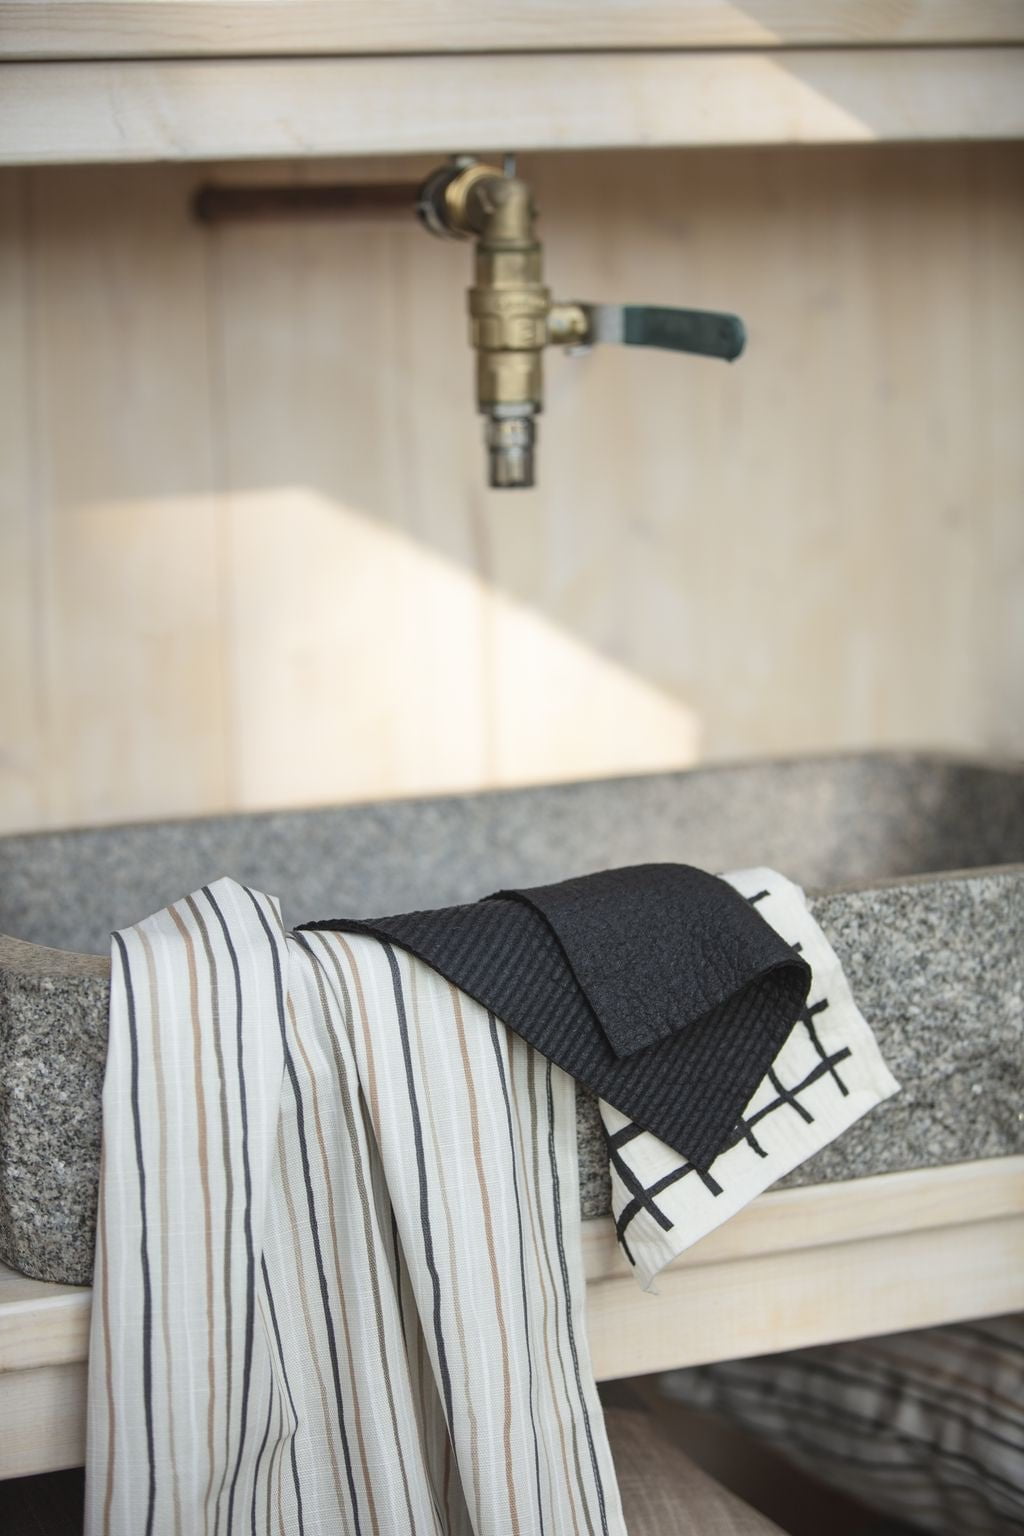 Spira Stripe čajový ručník 47x65 cm, přírodní